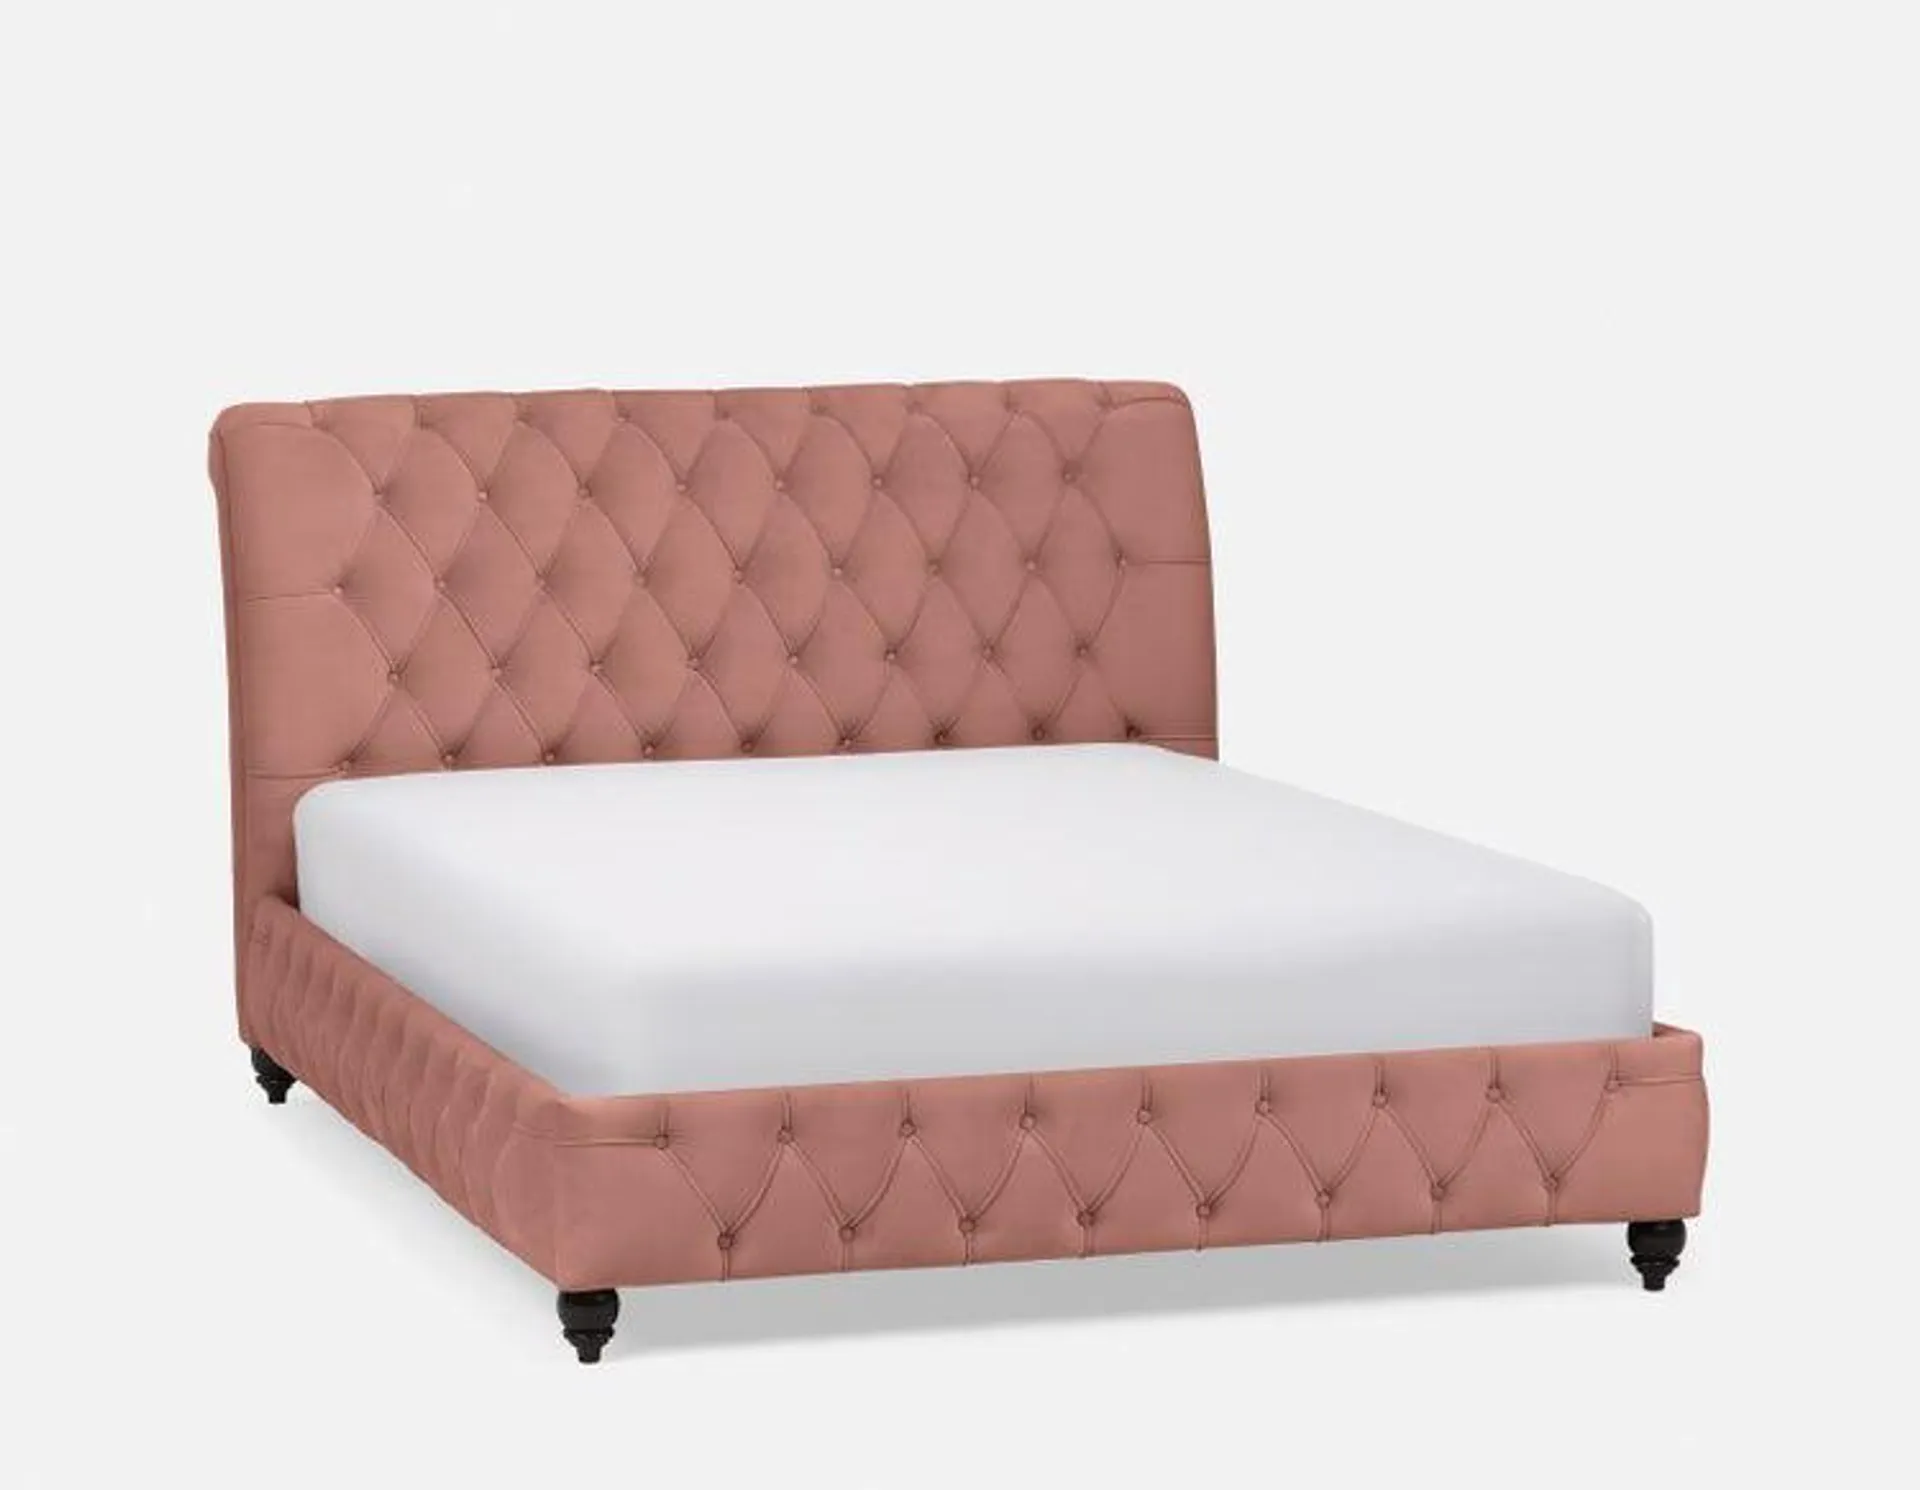 Tufted velvet queen size bed